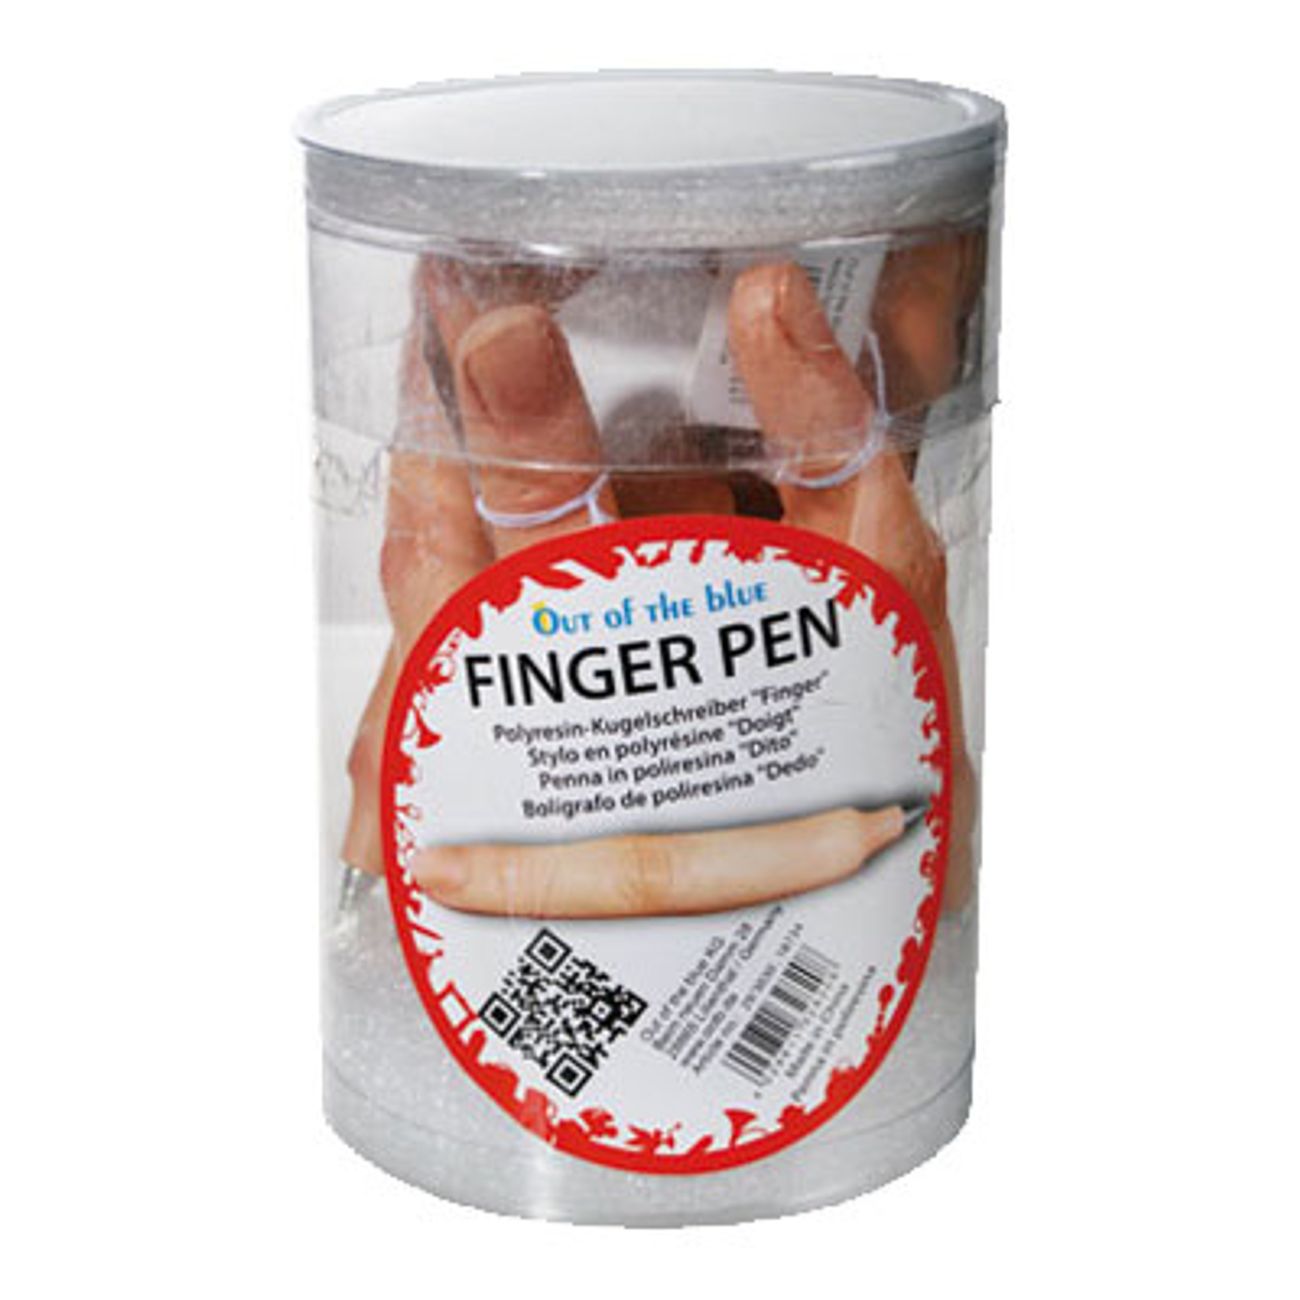 fingerpenna-2